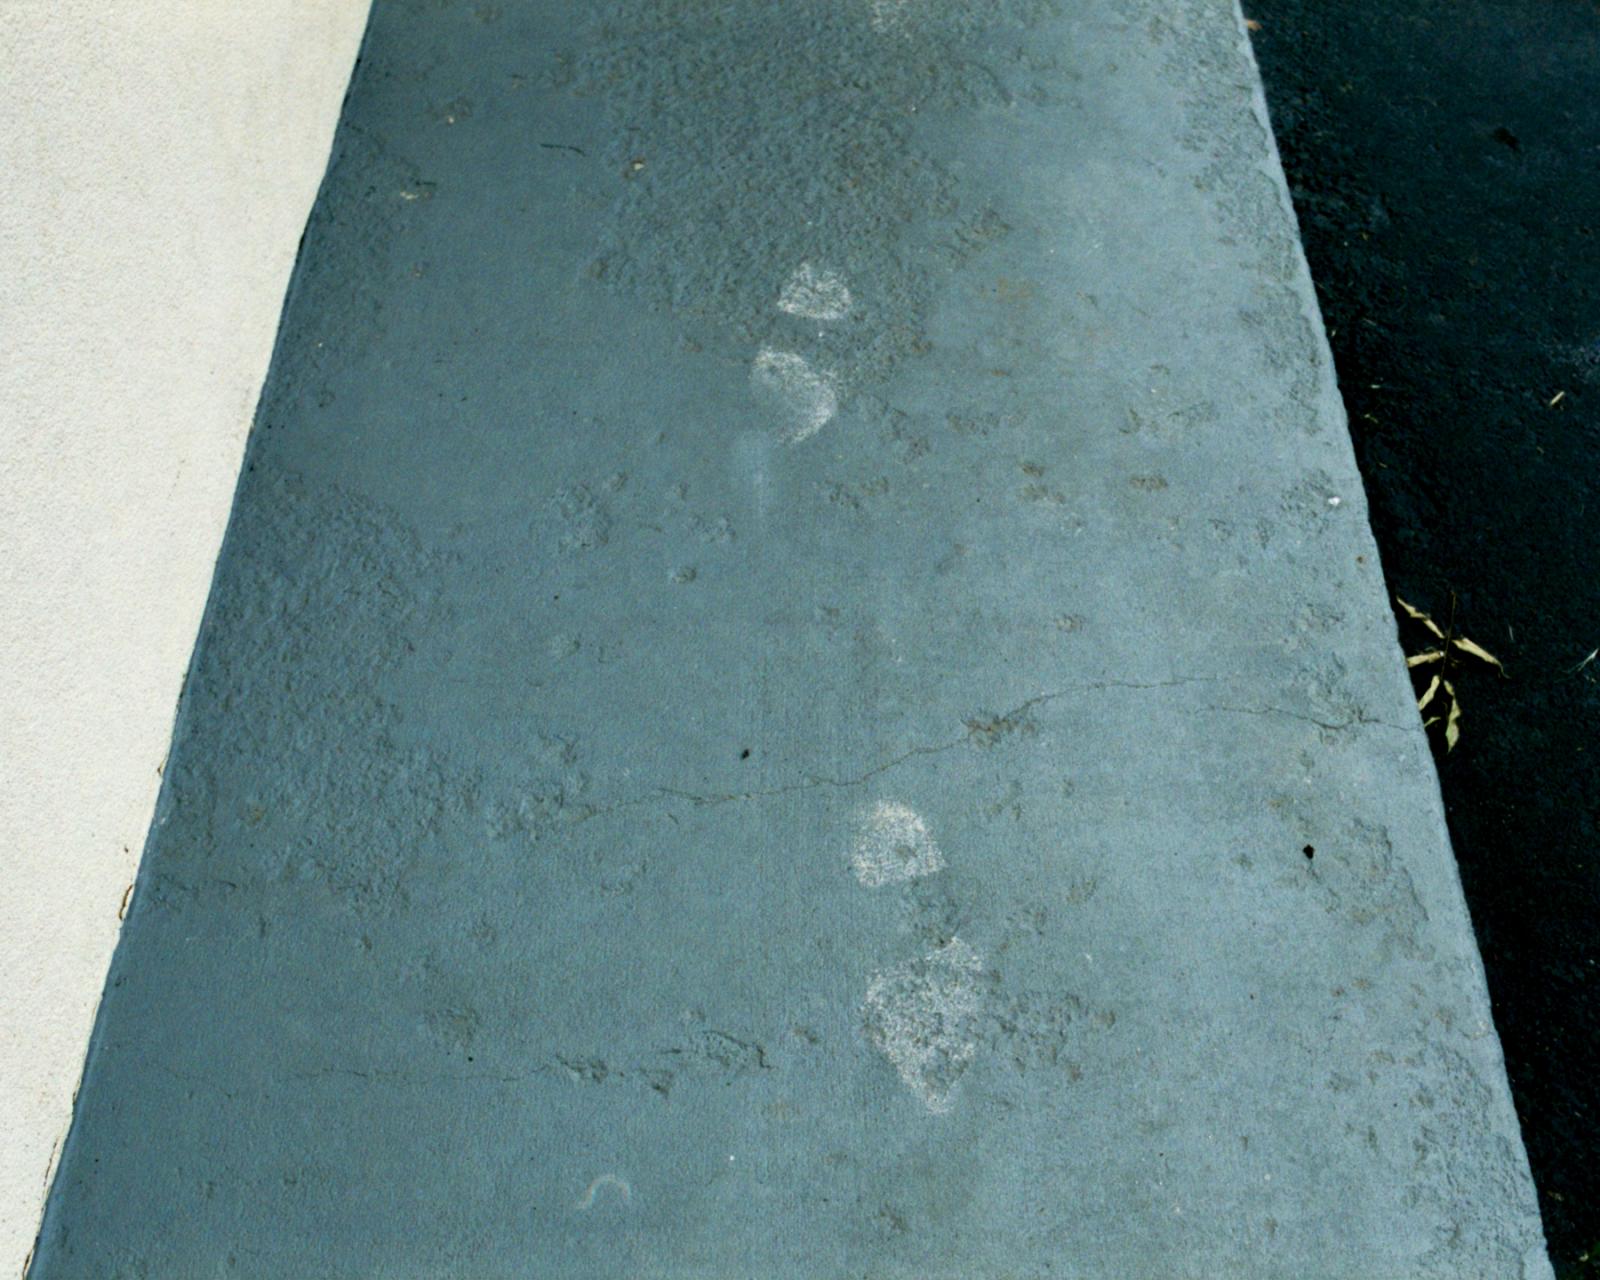 Motel footprints, Moore, OK.